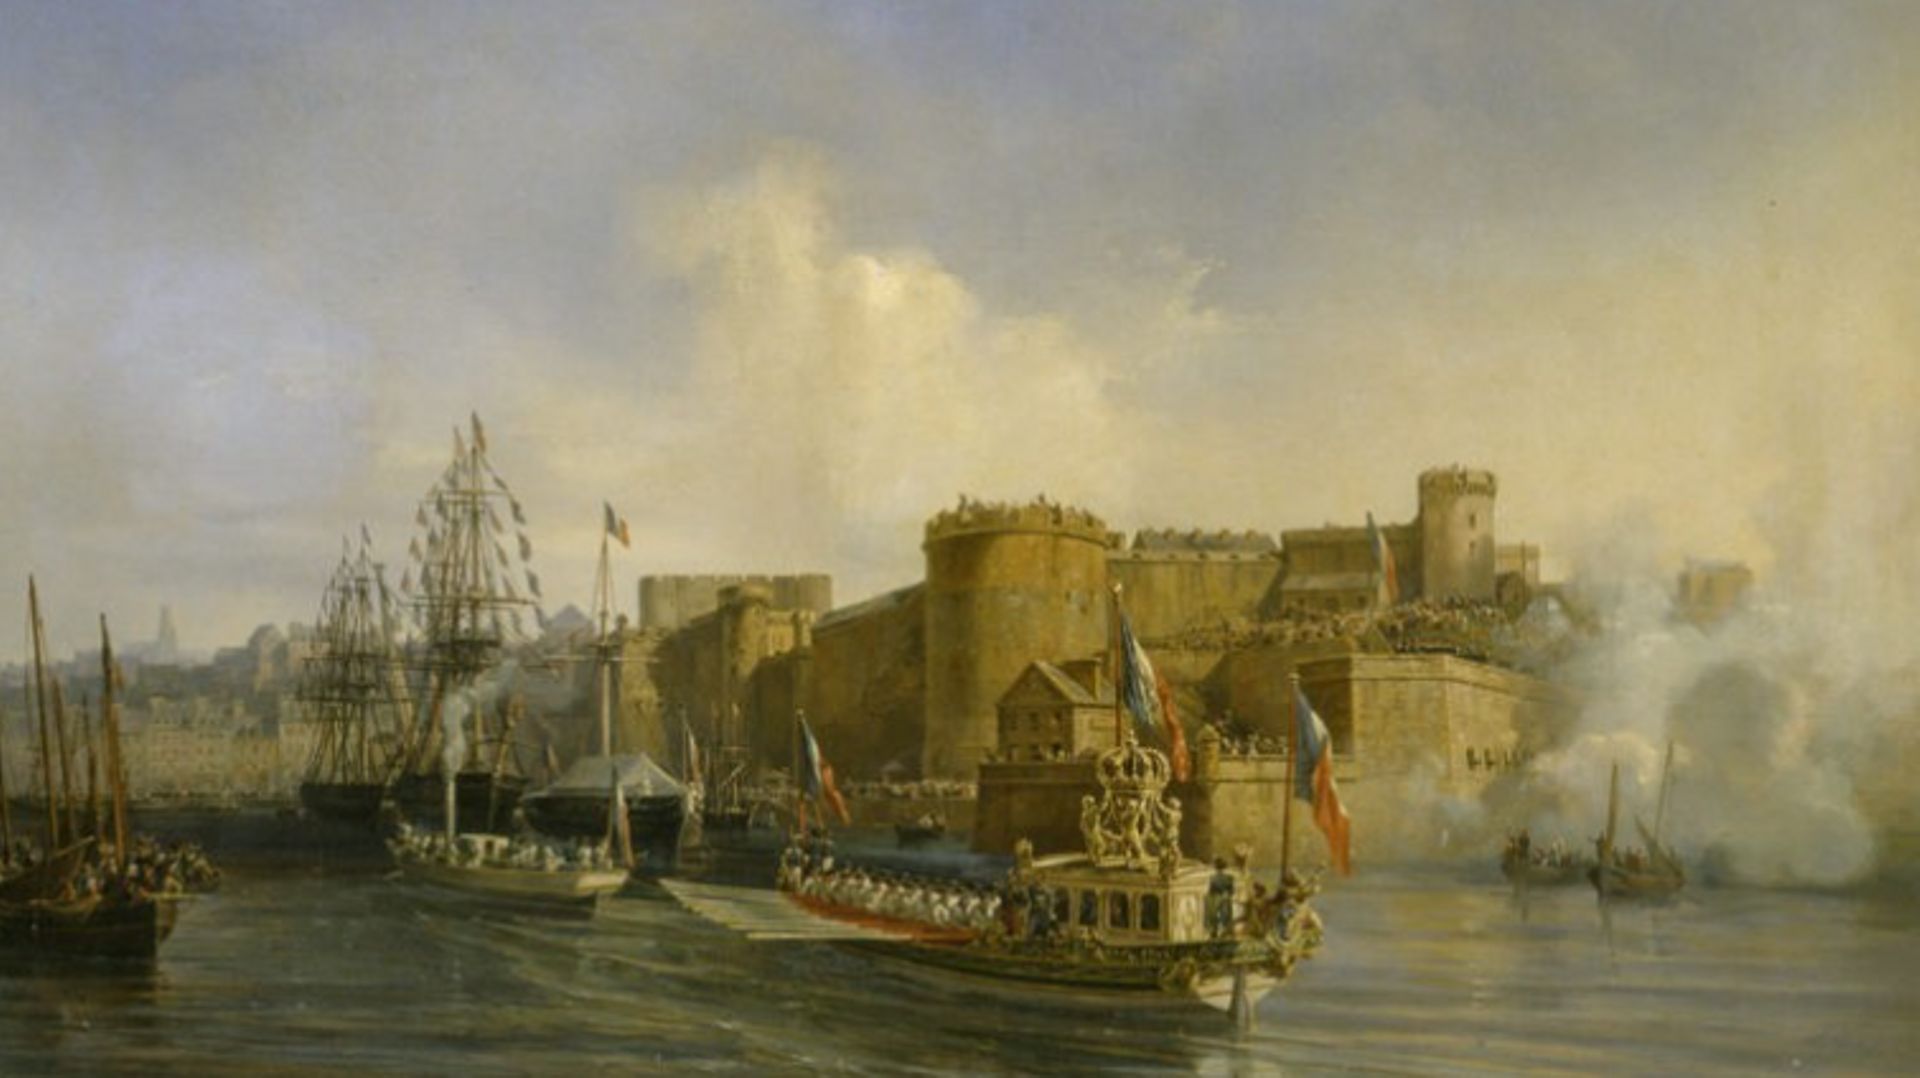 Visite de Napoléon III le 11 août 1858 à Brest